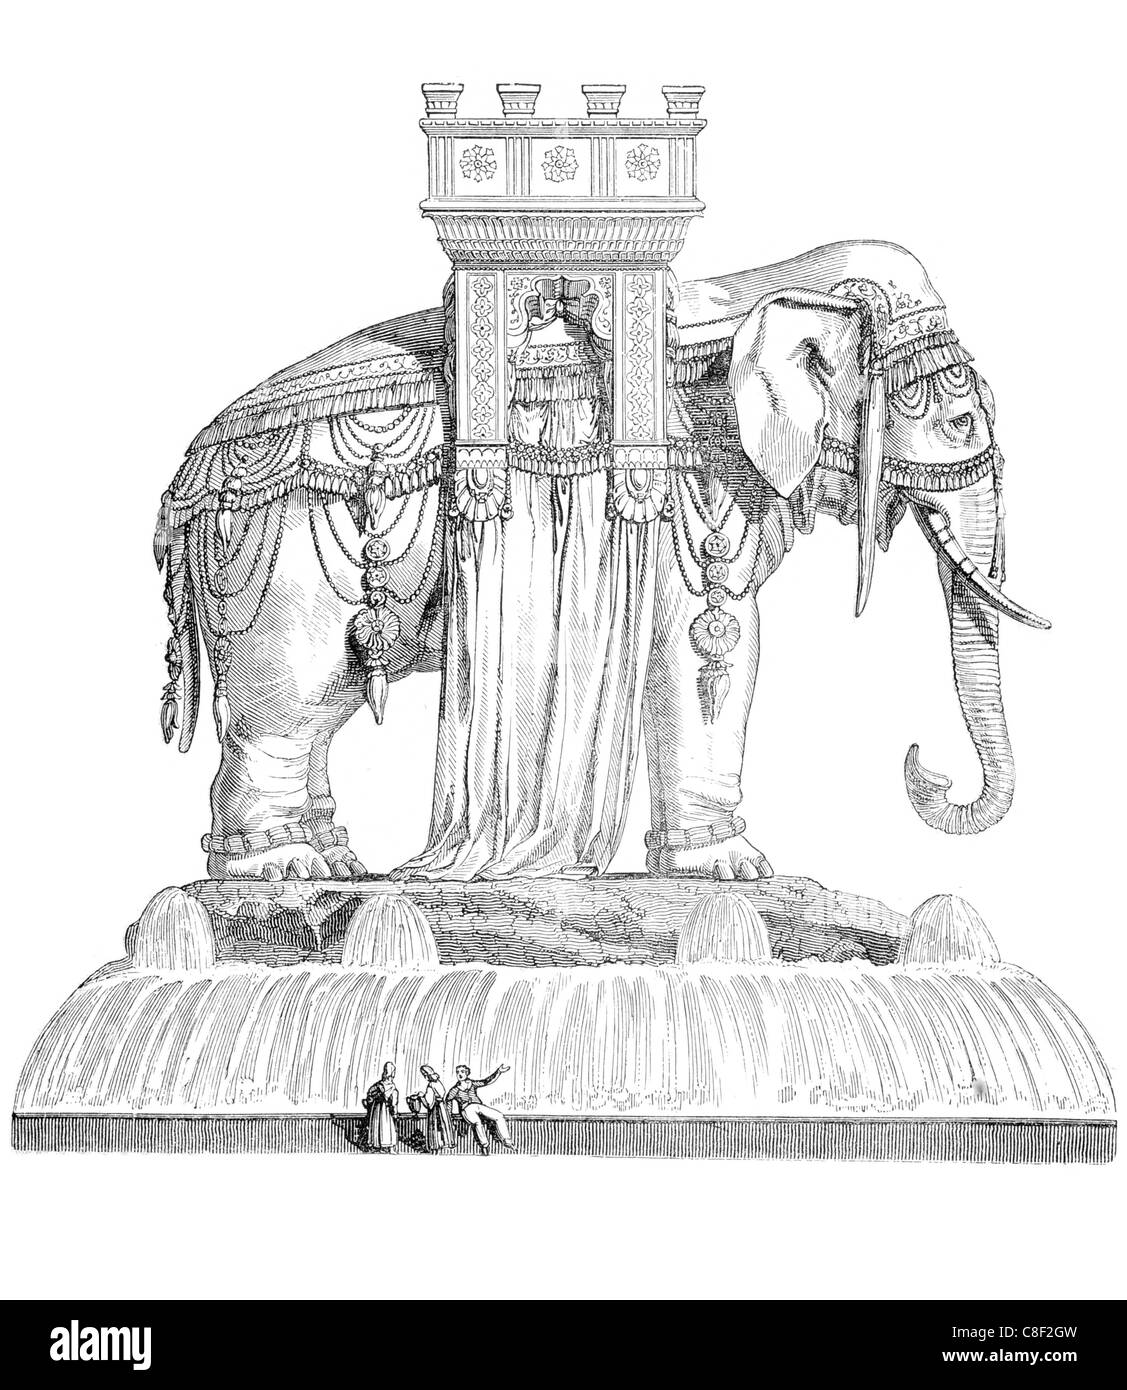 Progettazione fontana dell'Elefante Musée du Louvre Parigi fontane architettura molla riversa getti di bacino di alimentazione a getto di bere Foto Stock